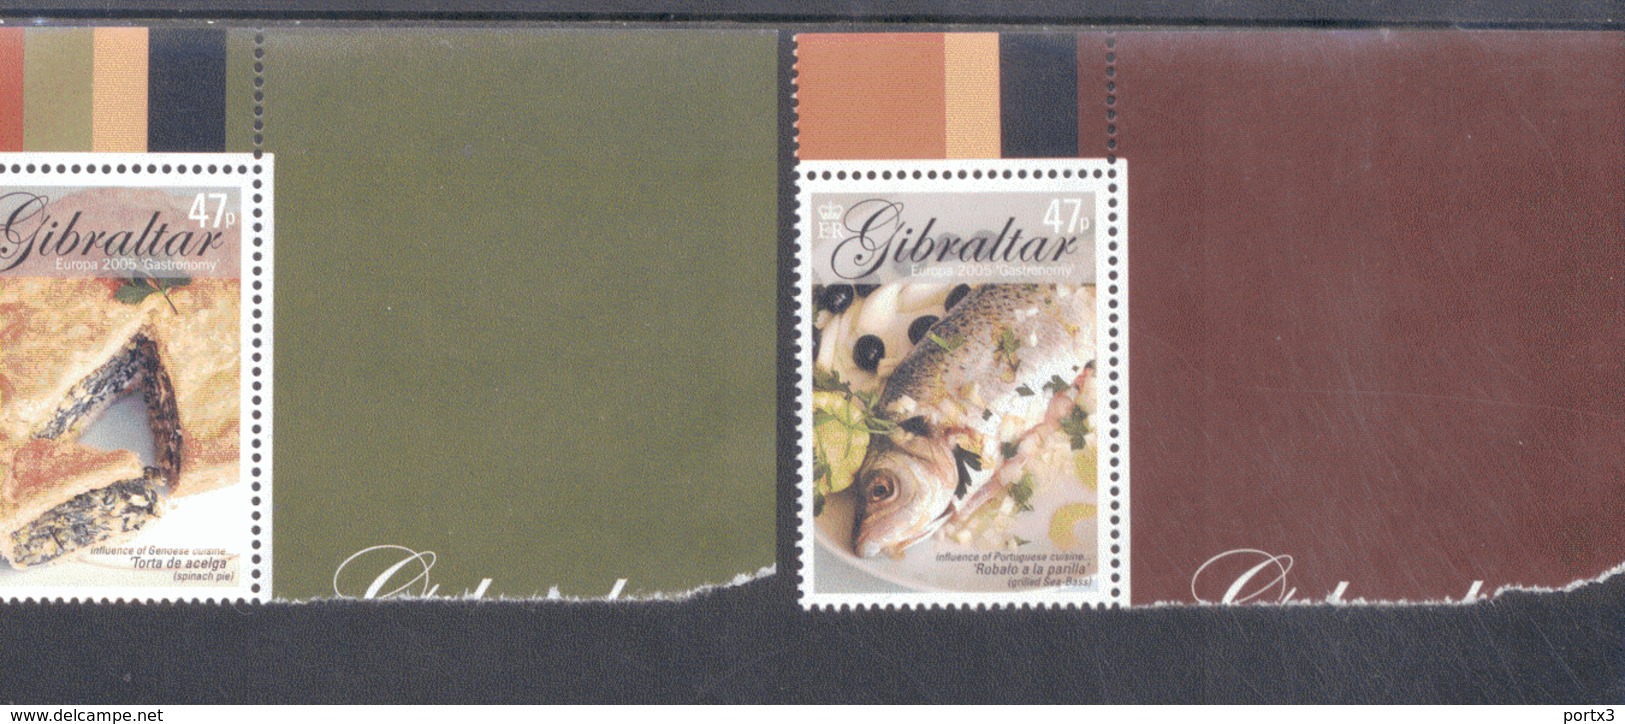 CEPT Gastronomie Gibraltar 1122 - 1125 MNH ** Postfrisch - 2005